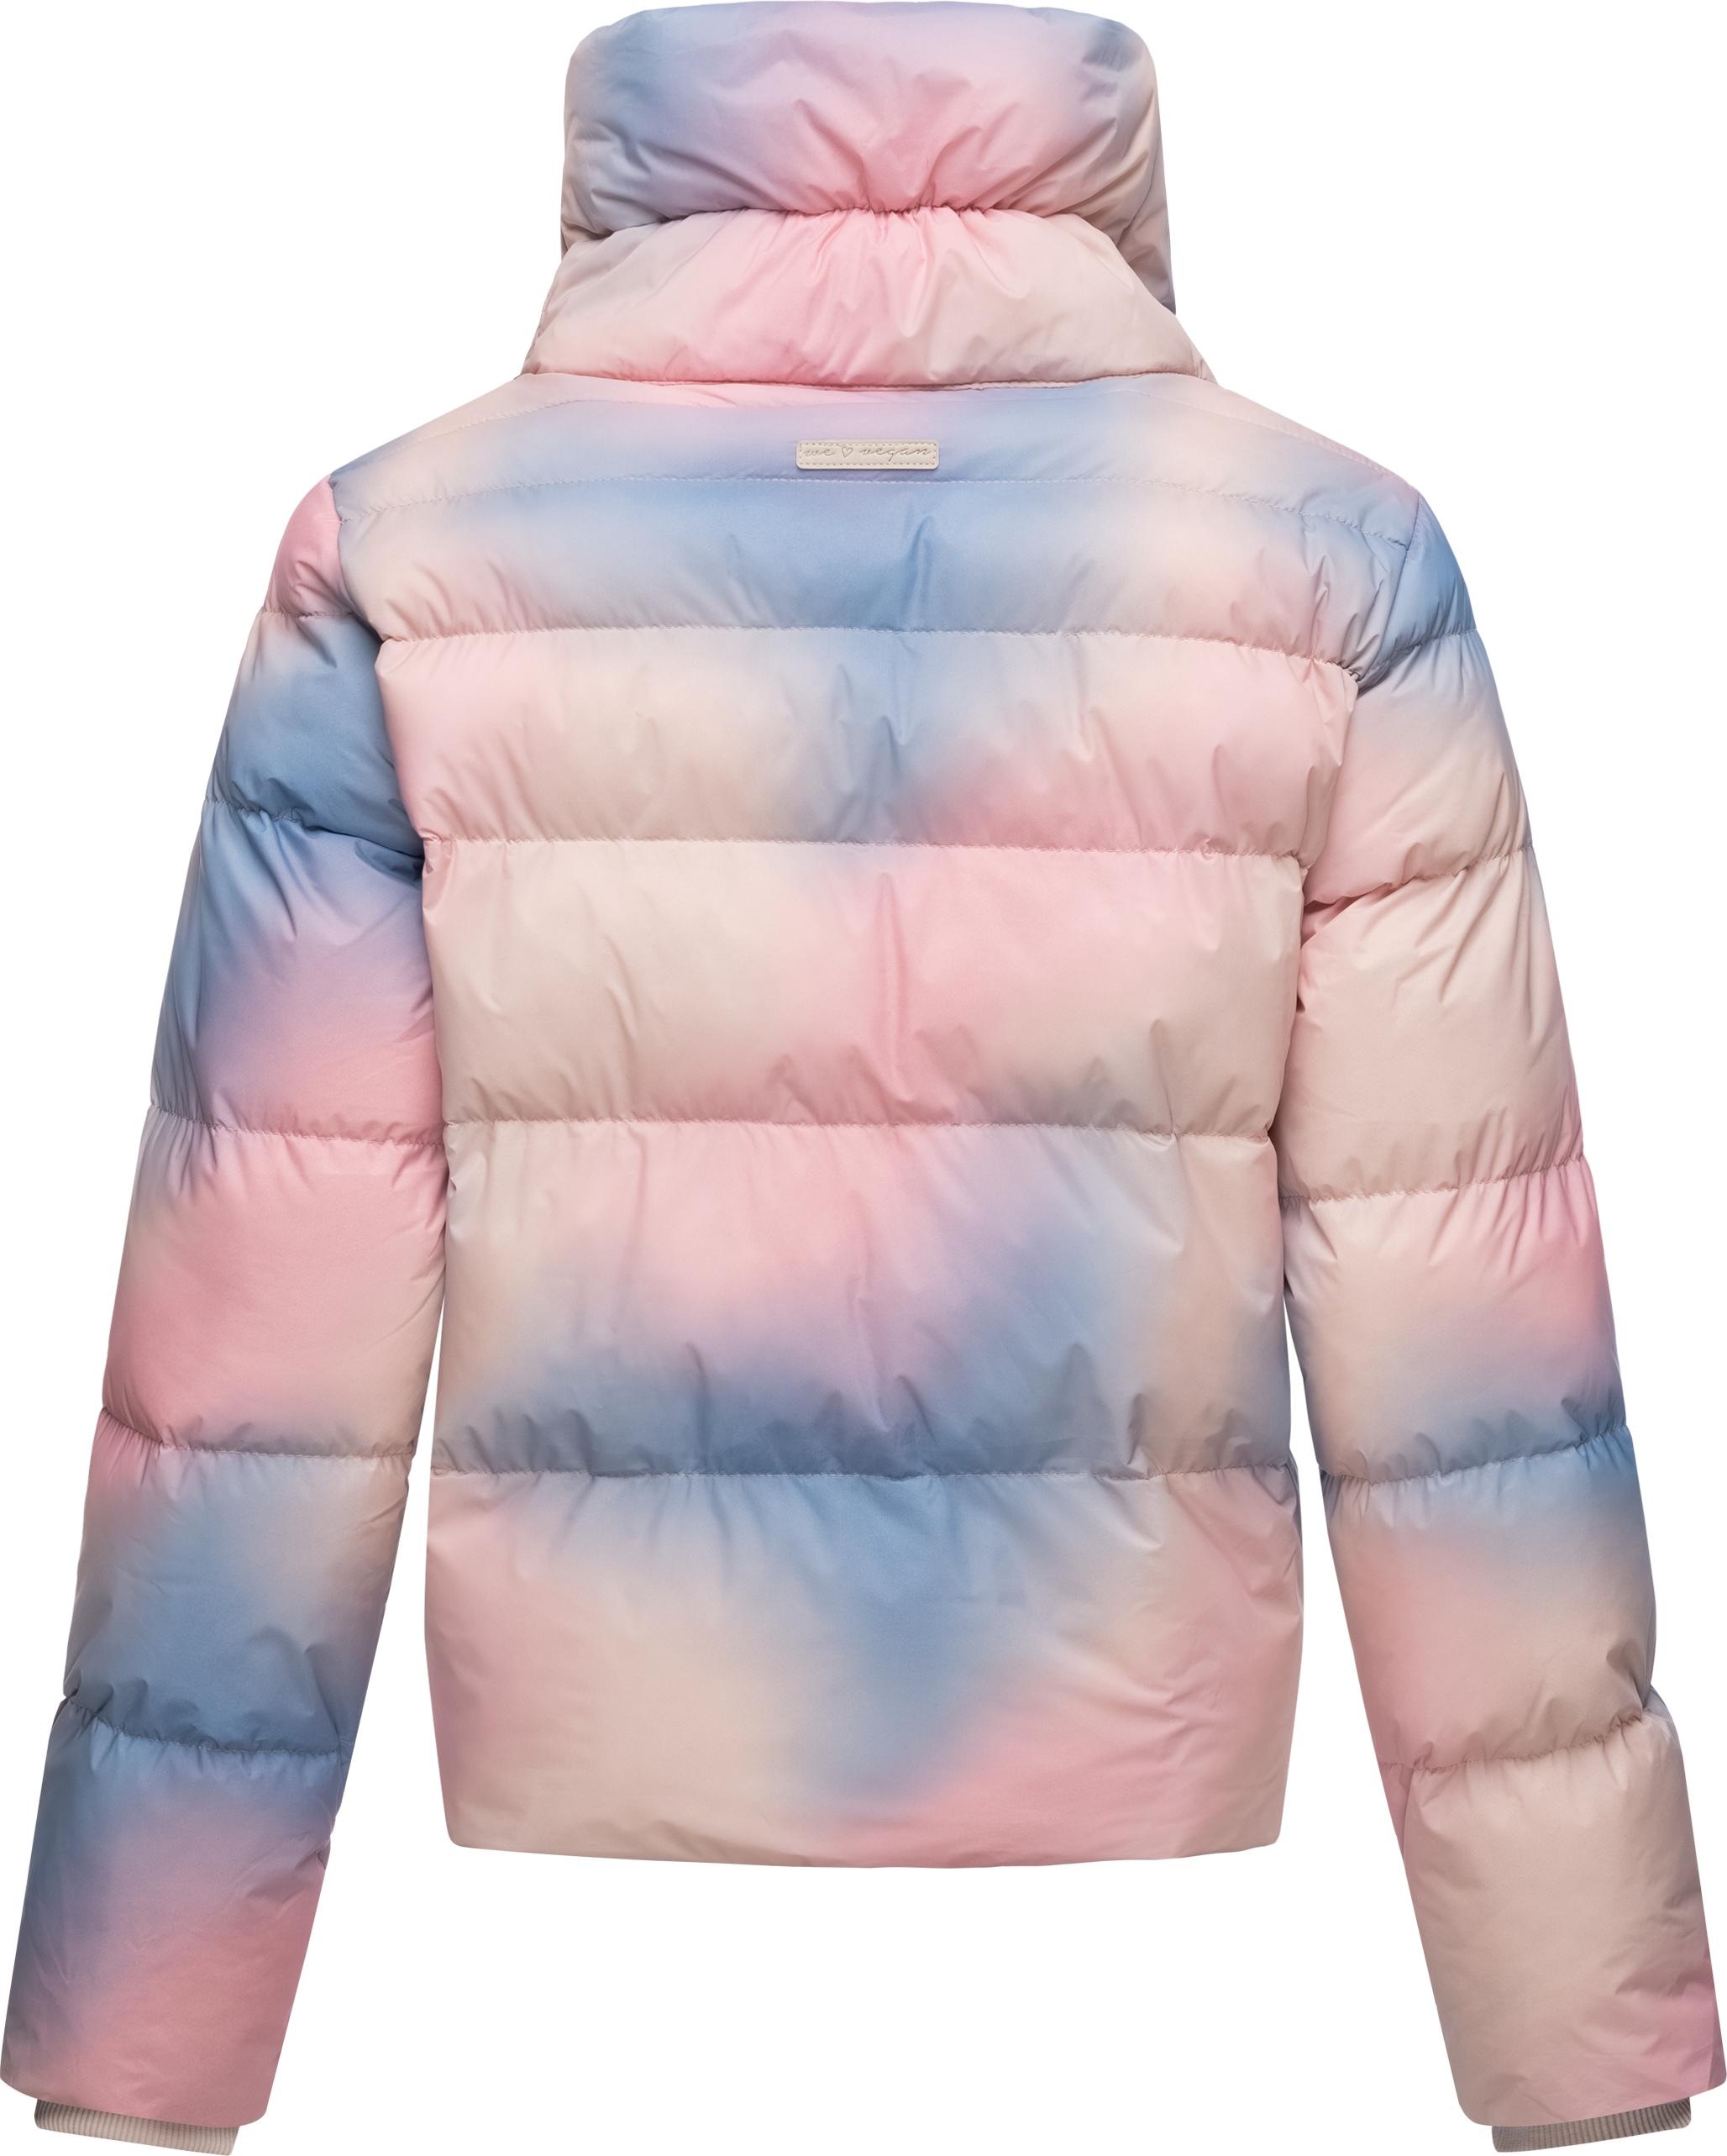 Topshop SNO printed ski jacket in multi